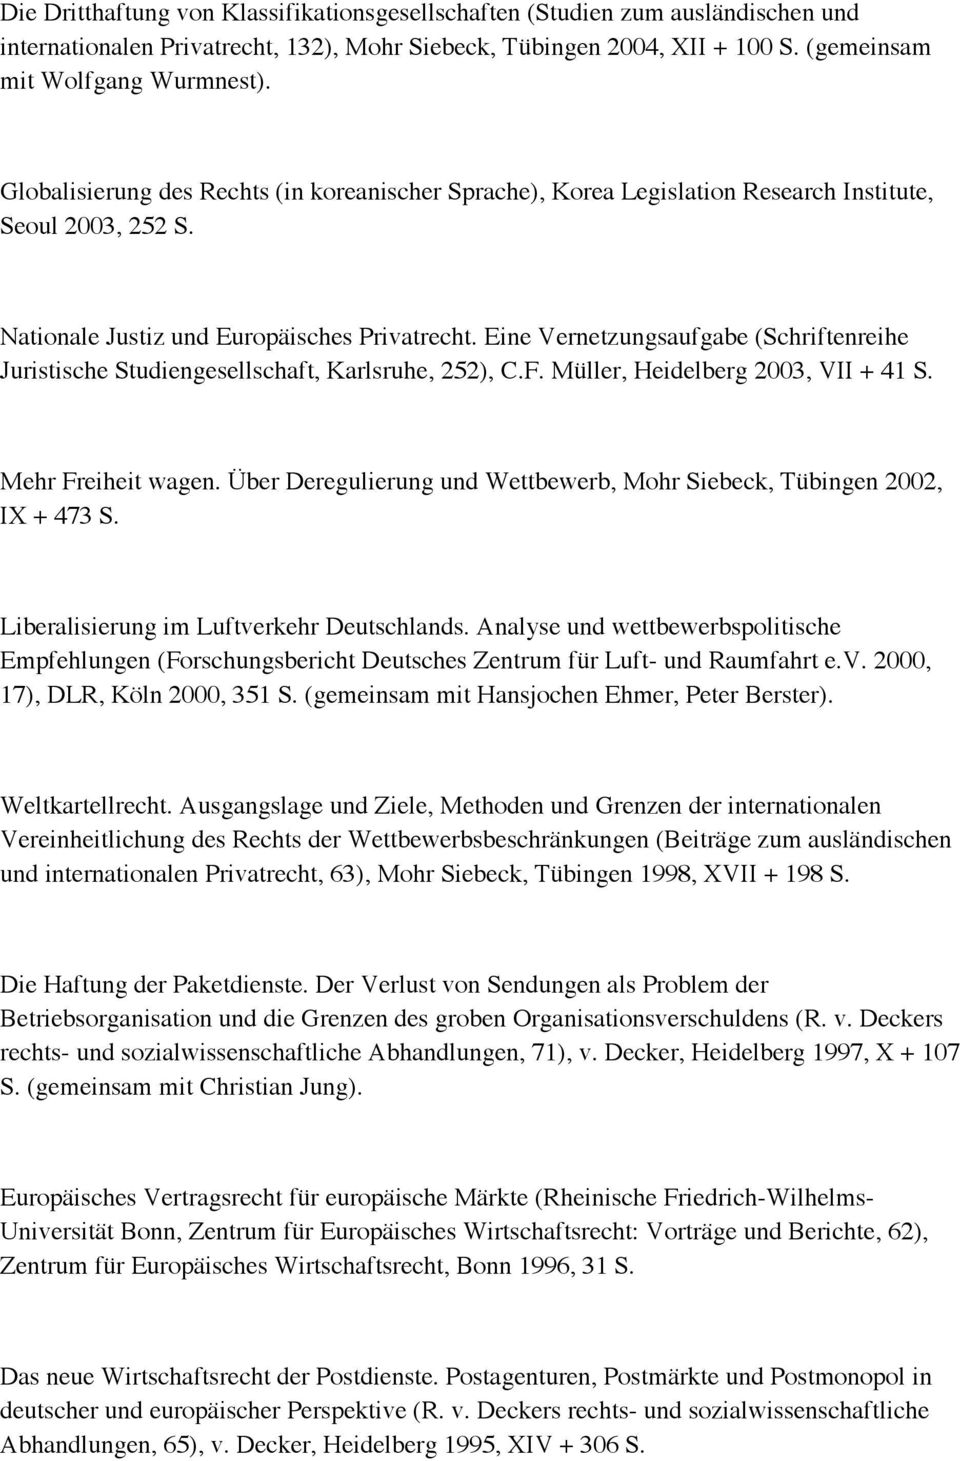 Eine Vernetzungsaufgabe (Schriftenreihe Juristische Studiengesellschaft, Karlsruhe, 252), C.F. Müller, Heidelberg 2003, VII + 41 S. Mehr Freiheit wagen.